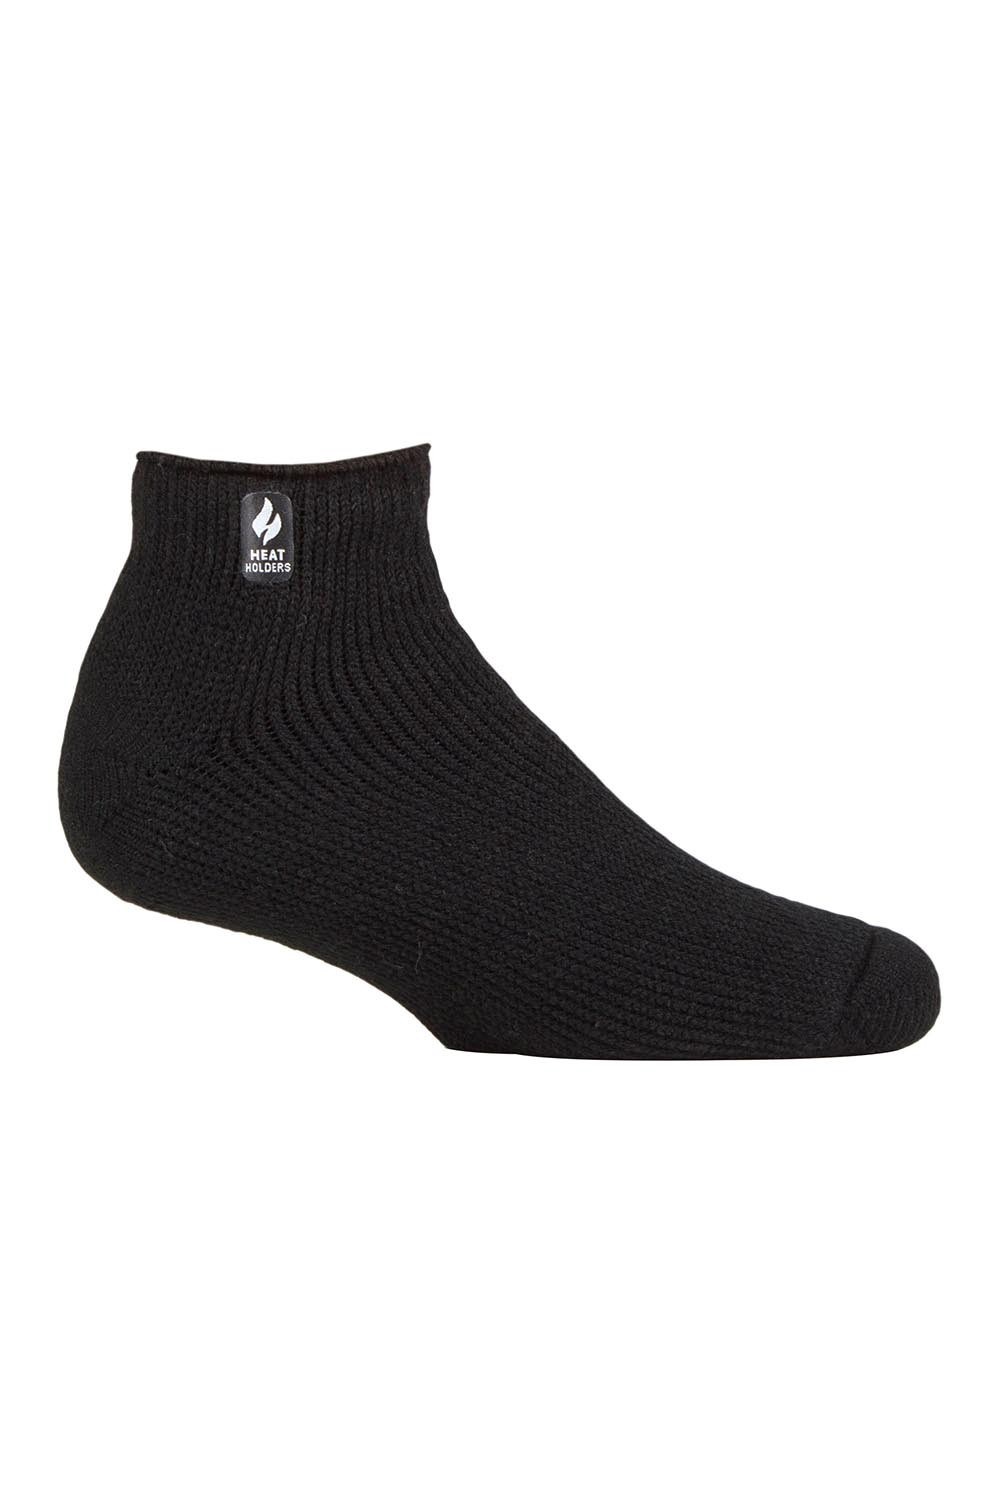 Mens Thermal Trainer Socks